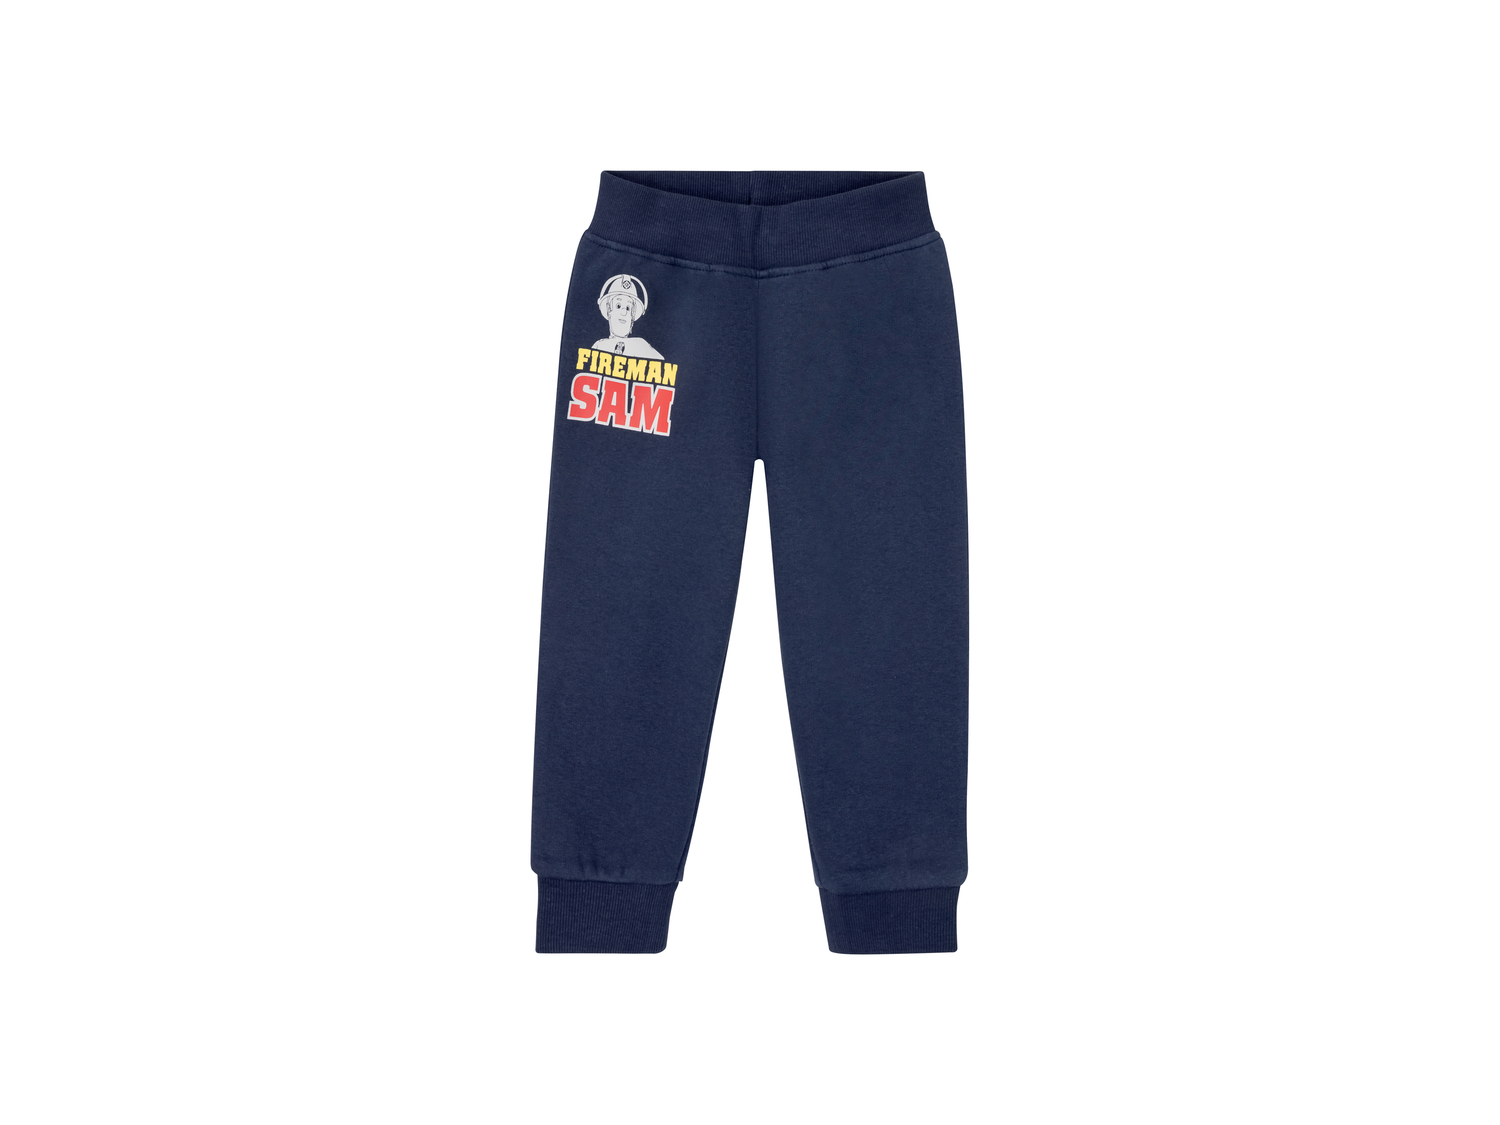 Pantaloni sportivi da bambino Sam il Pompiere, Paw Patrol, Batman Oeko-tex, prezzo ...